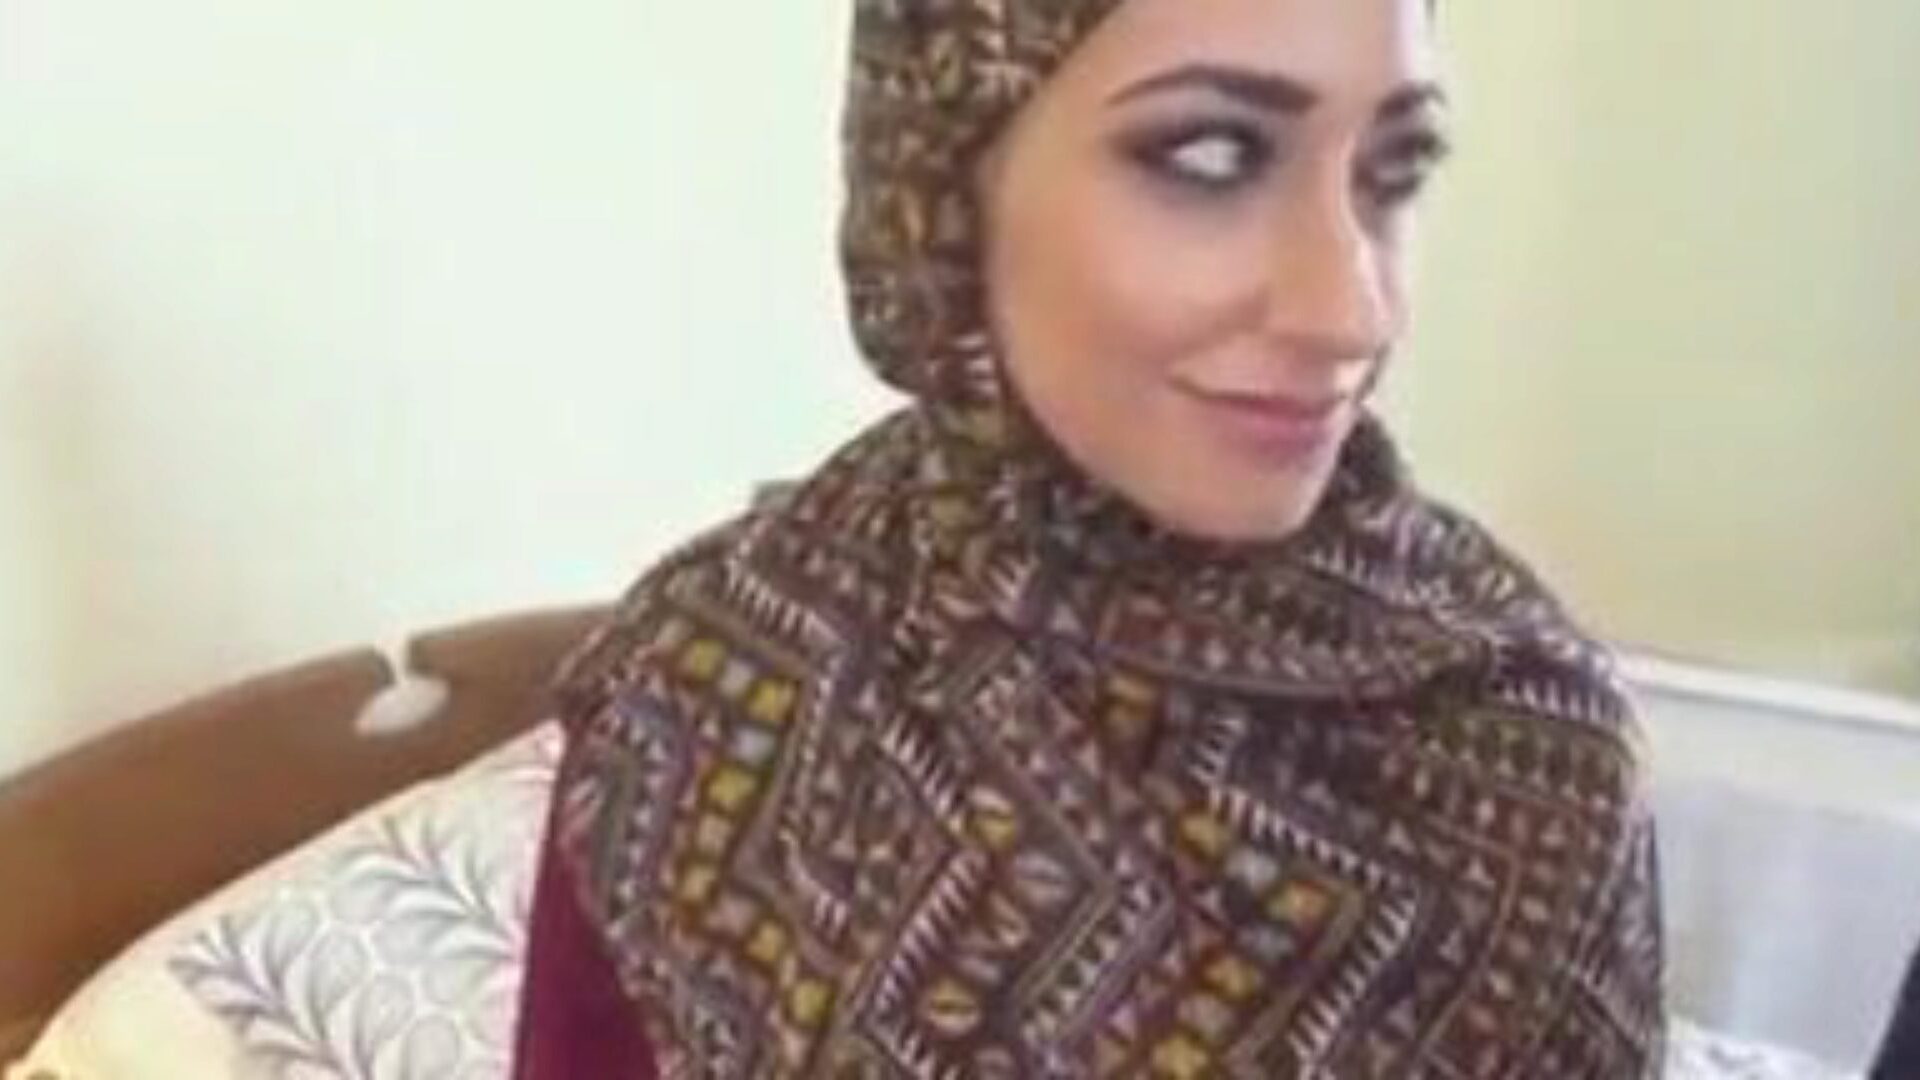 בחורה חיג'אבית מוסלמית מזדיינת, סרטון פורנו של מוסלמים בחינם תקליטור צפו בקטגוריית סרטים מזדיינת בחורה חיג'אבית מוסלמית ב xhamster, דף האינטרנט הגדול ביותר של שפופרת מזדיינת עם טונות של שפופרת ערבית מוסלמית בחינם וידיאו פורנו של חיג'אב וידיאו.